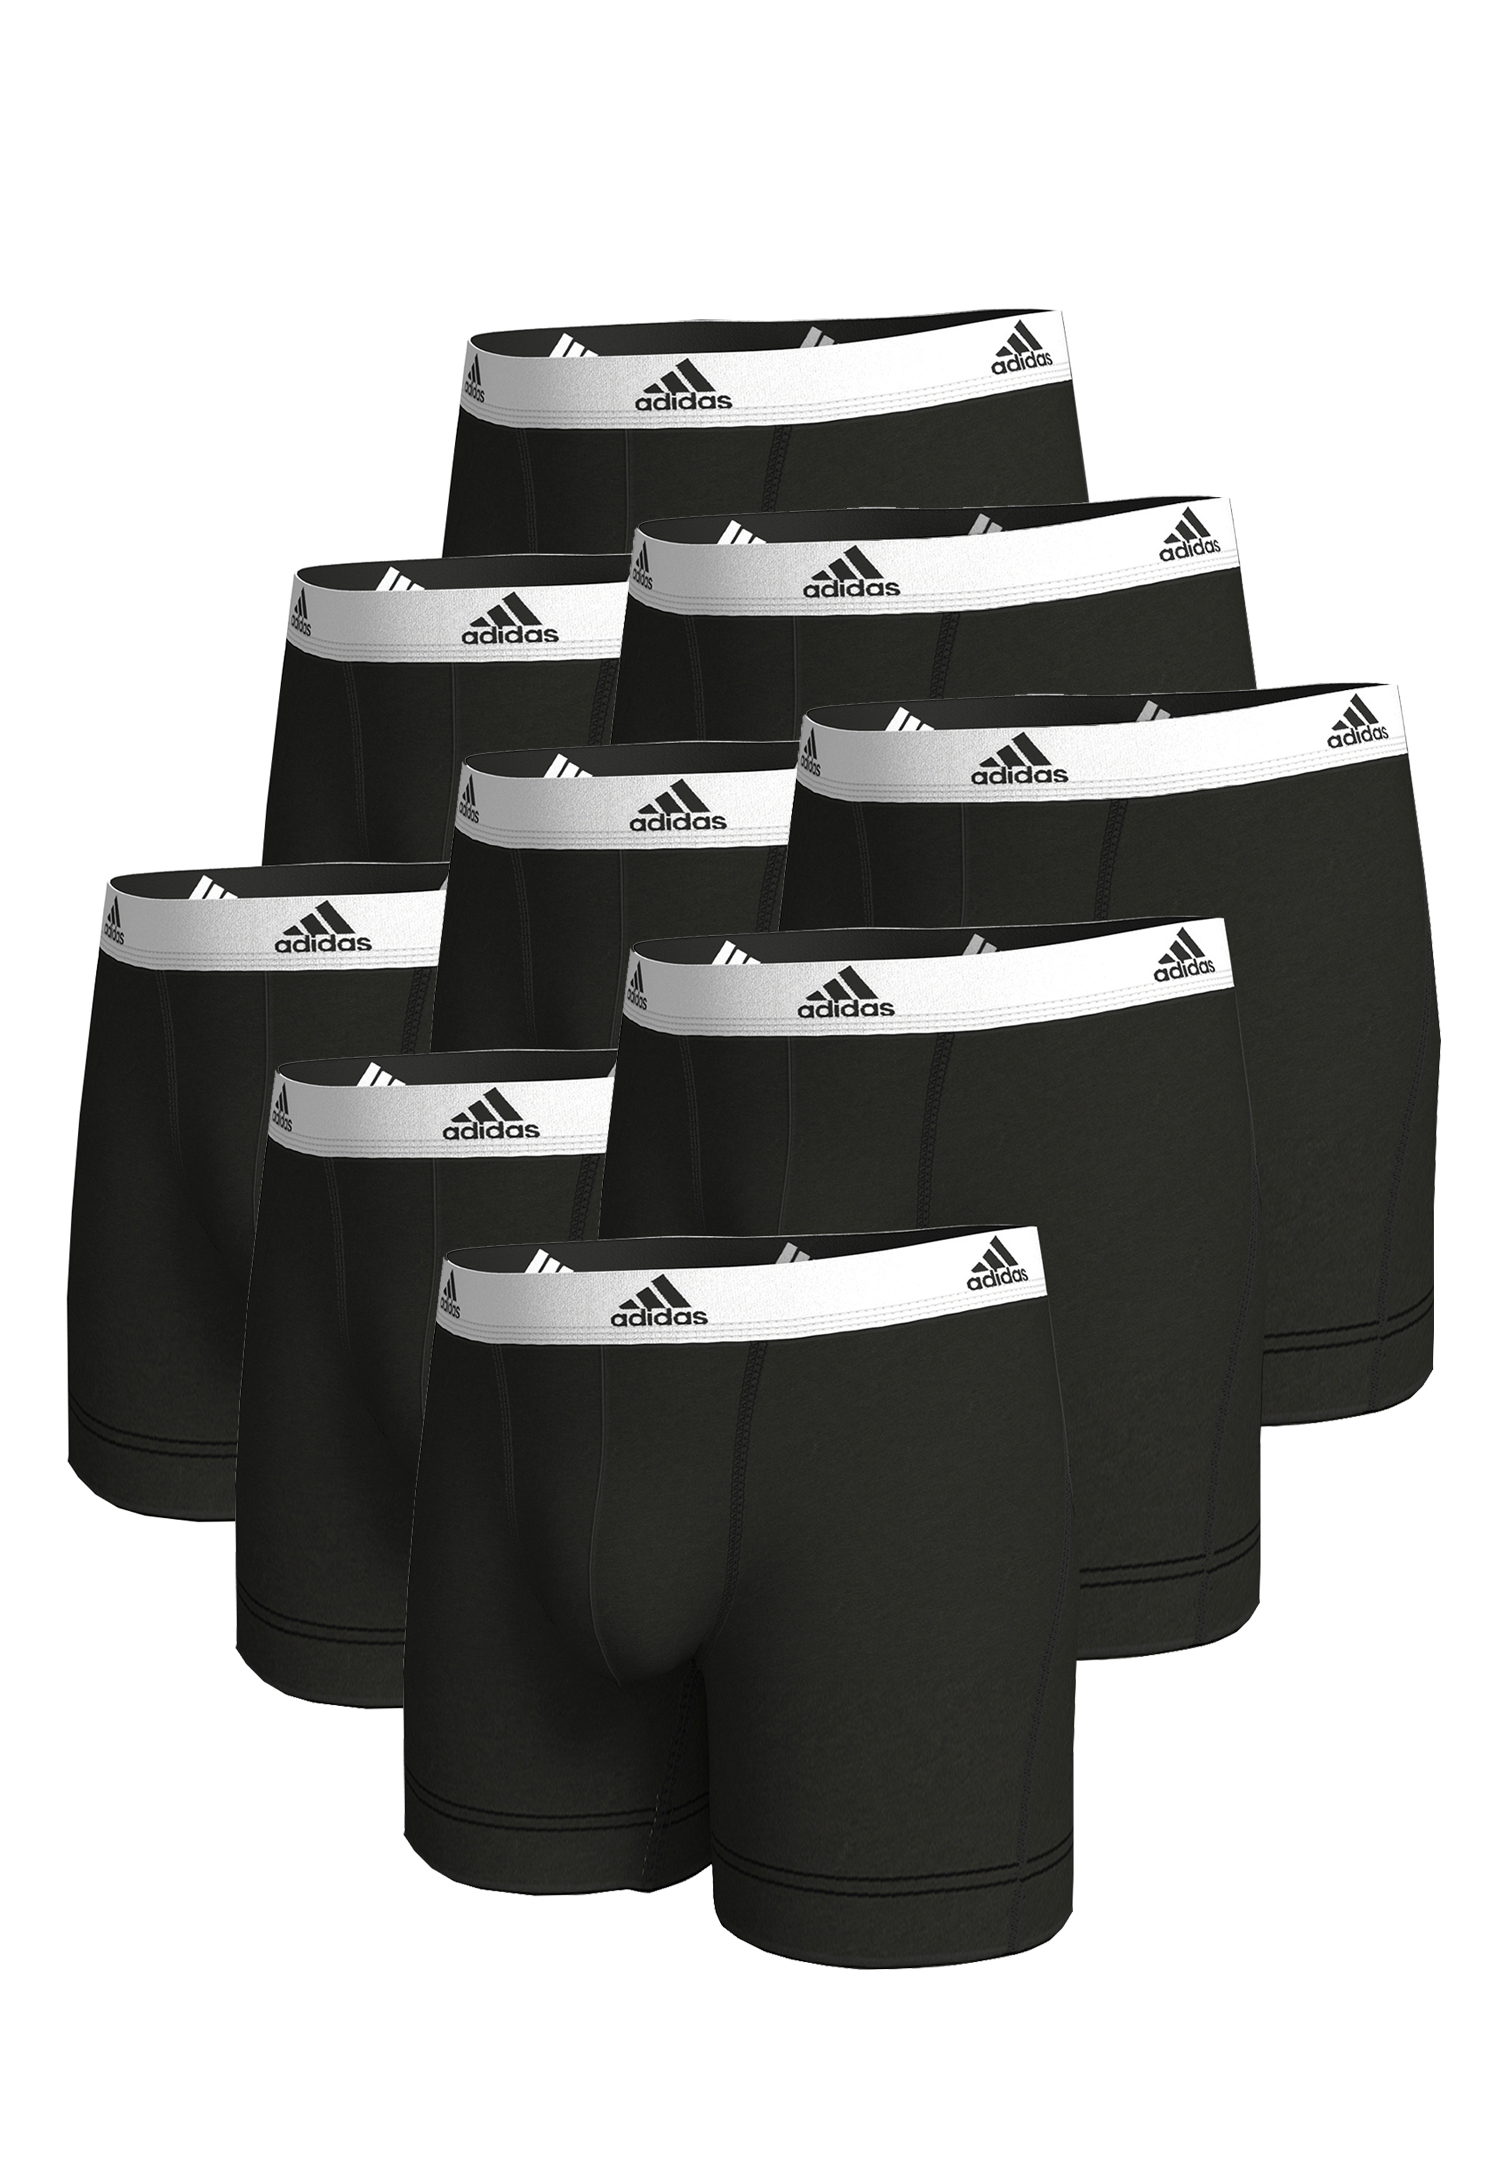 Adidas Basic Boxer Brief Men Herren Unterhose Shorts Unterwäsche 9er Pack  